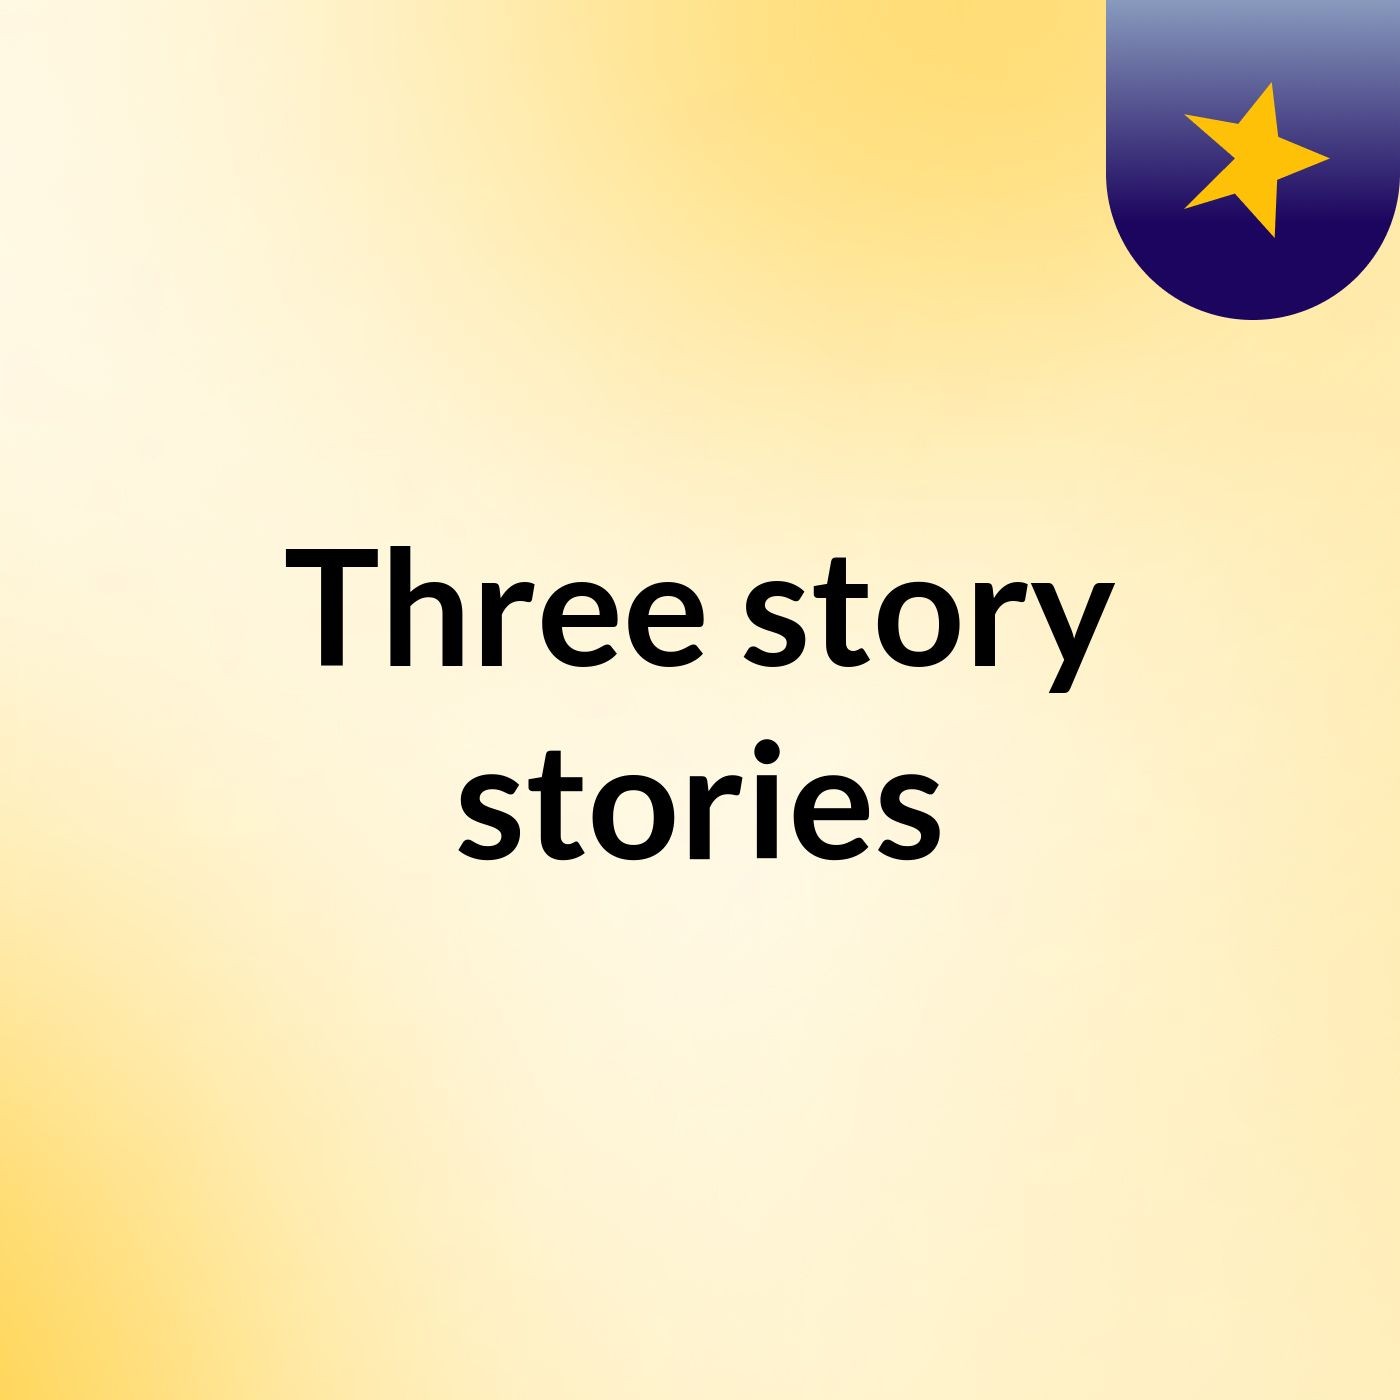 Three story stories